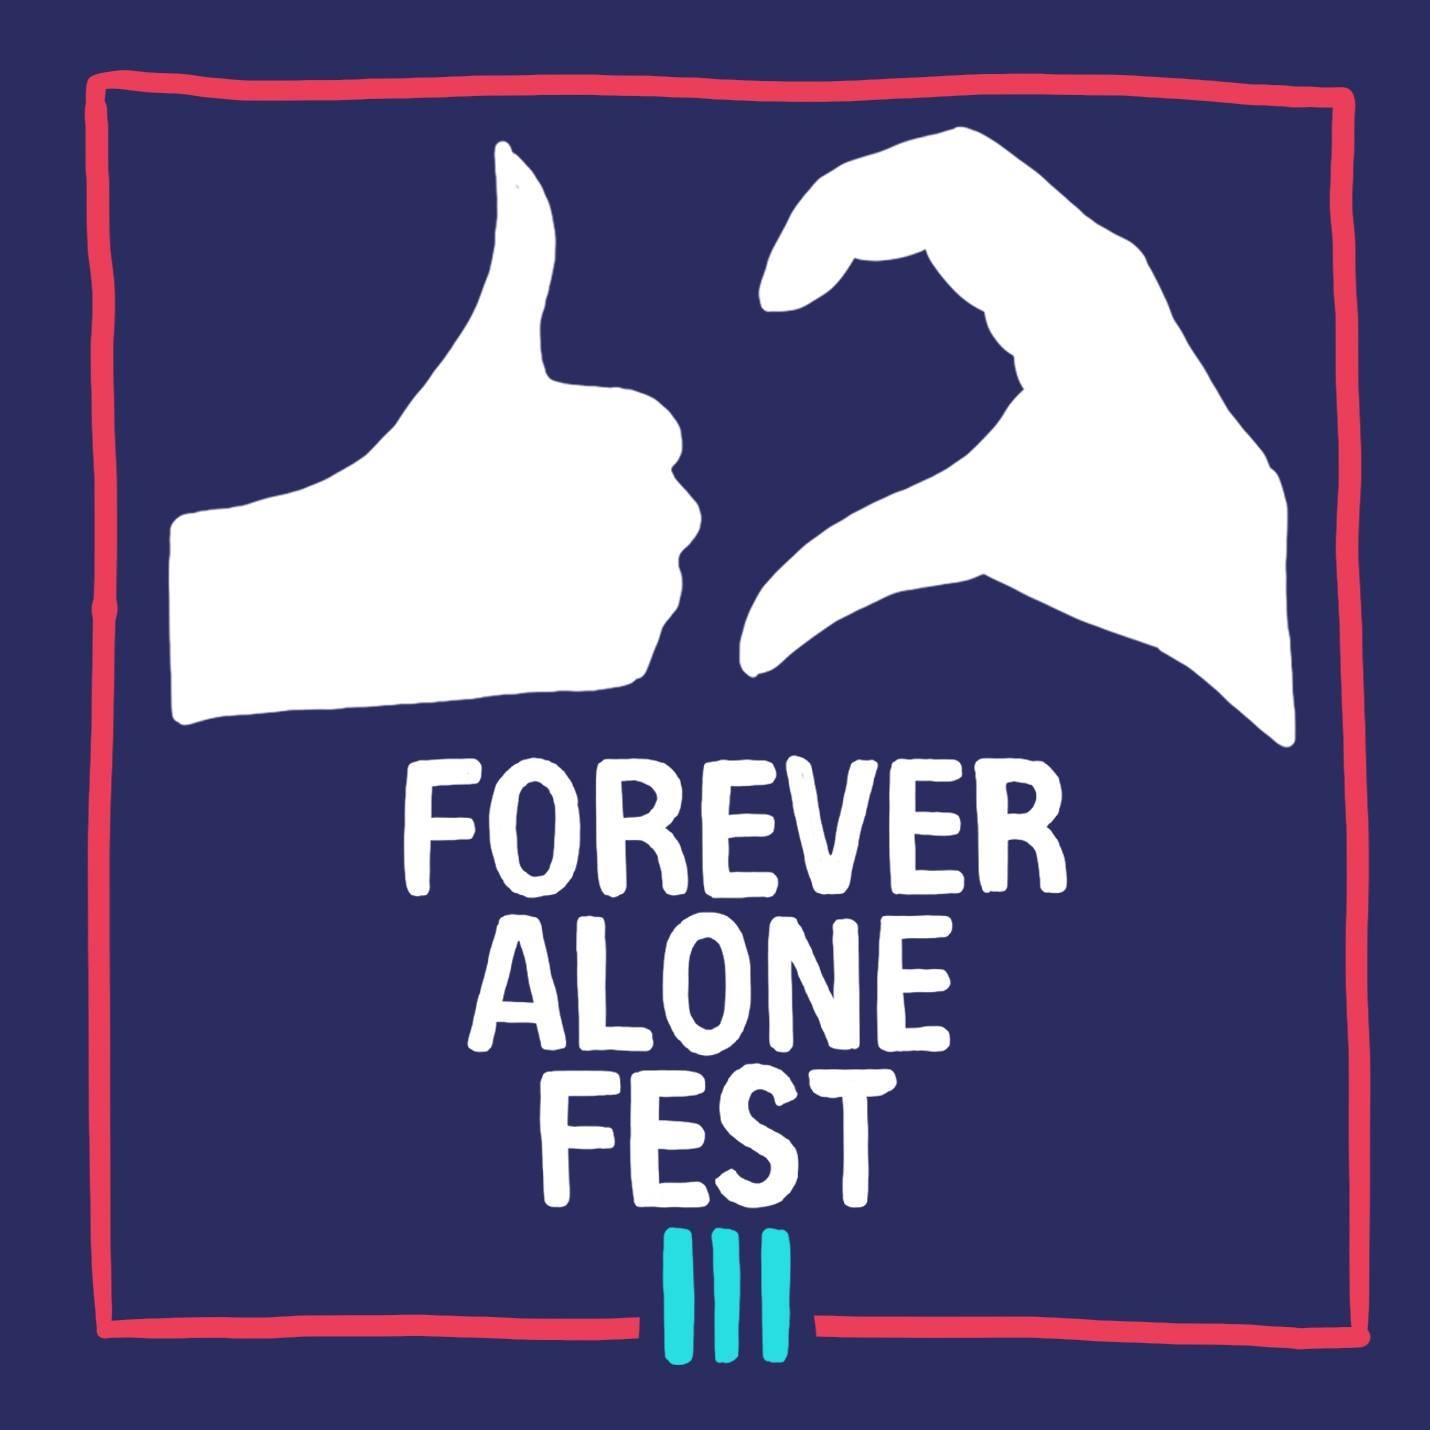 Todos a apoyar al Forever Alone Fest